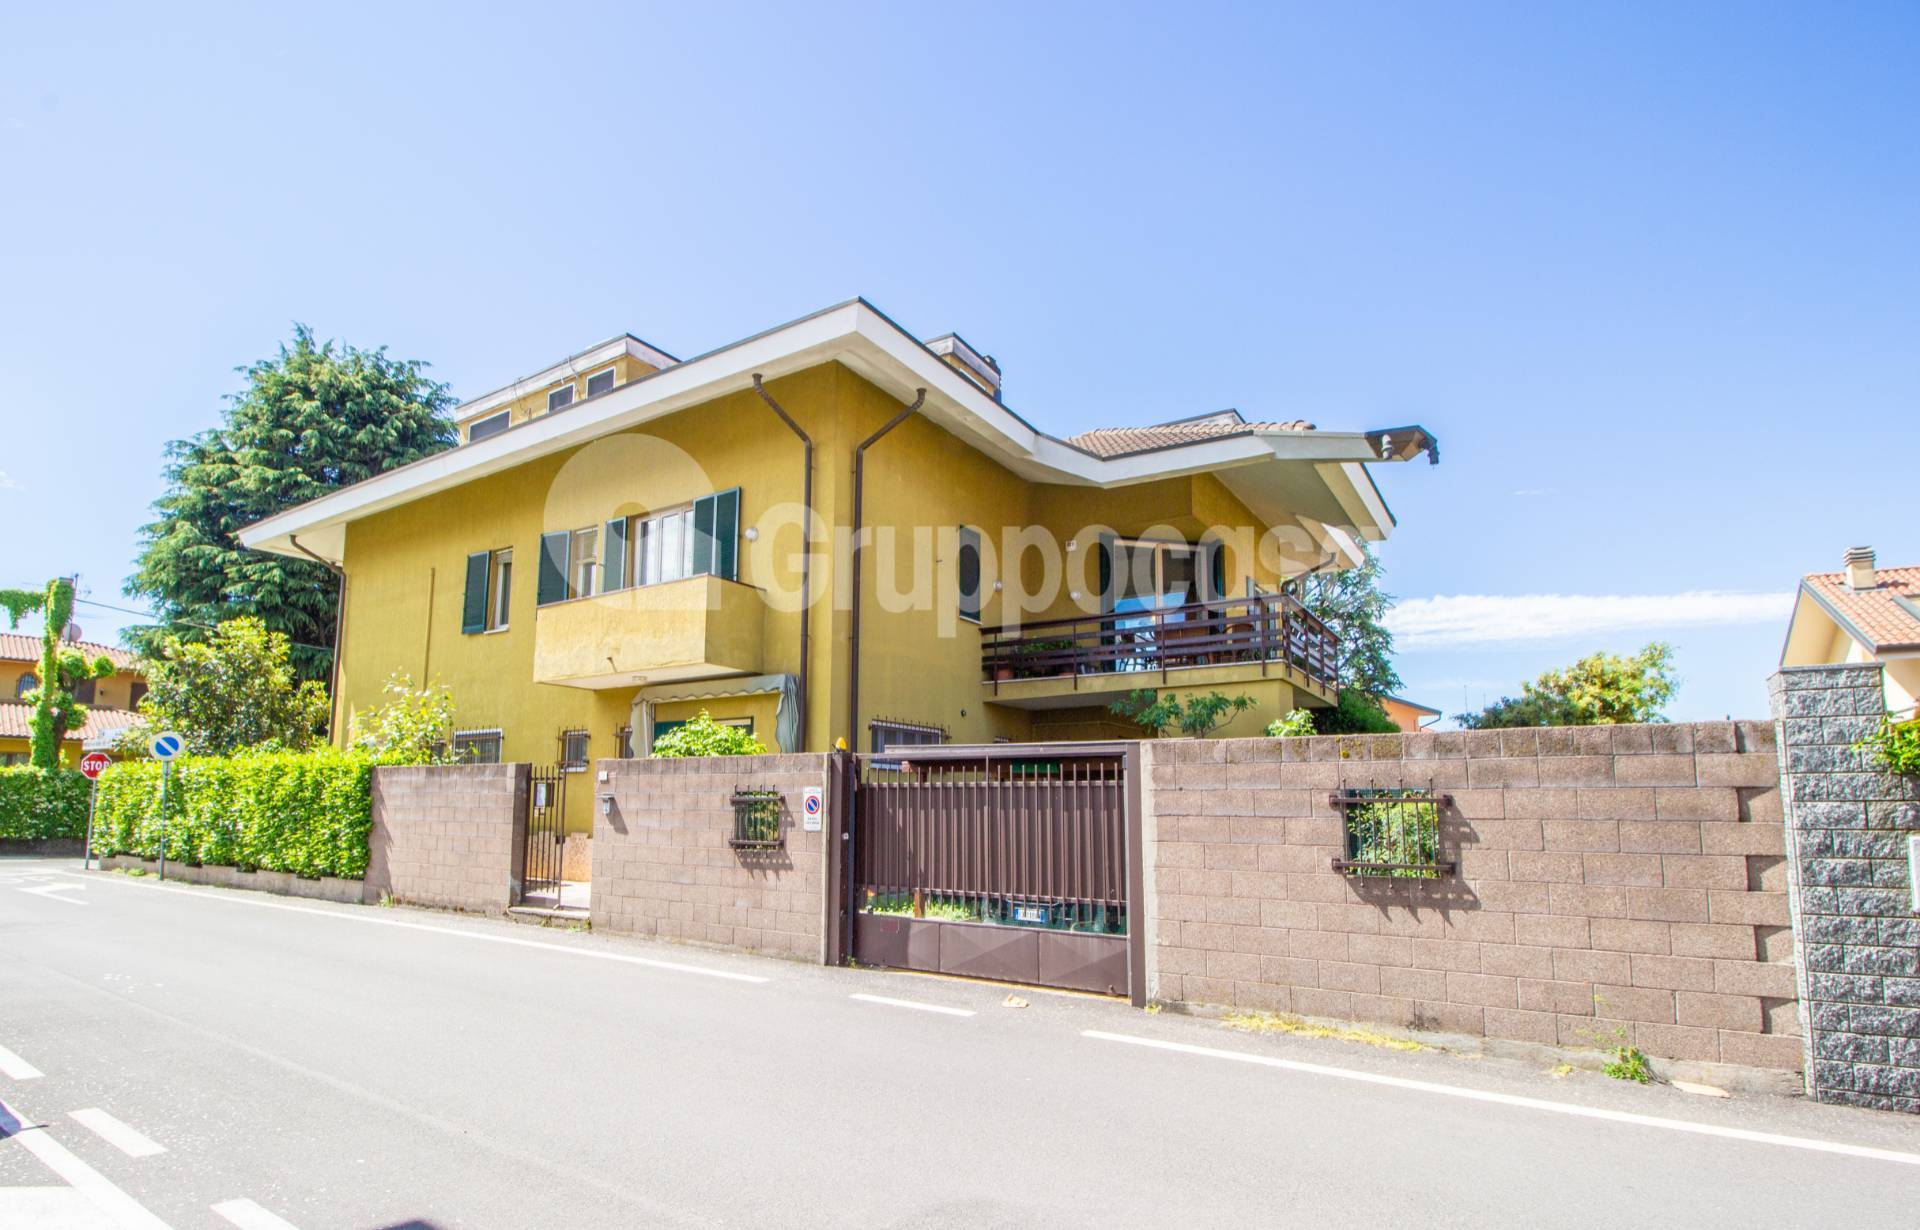 Villa Bifamiliare in vendita a Marcallo con Casone, 6 locali, prezzo € 475.000 | PortaleAgenzieImmobiliari.it